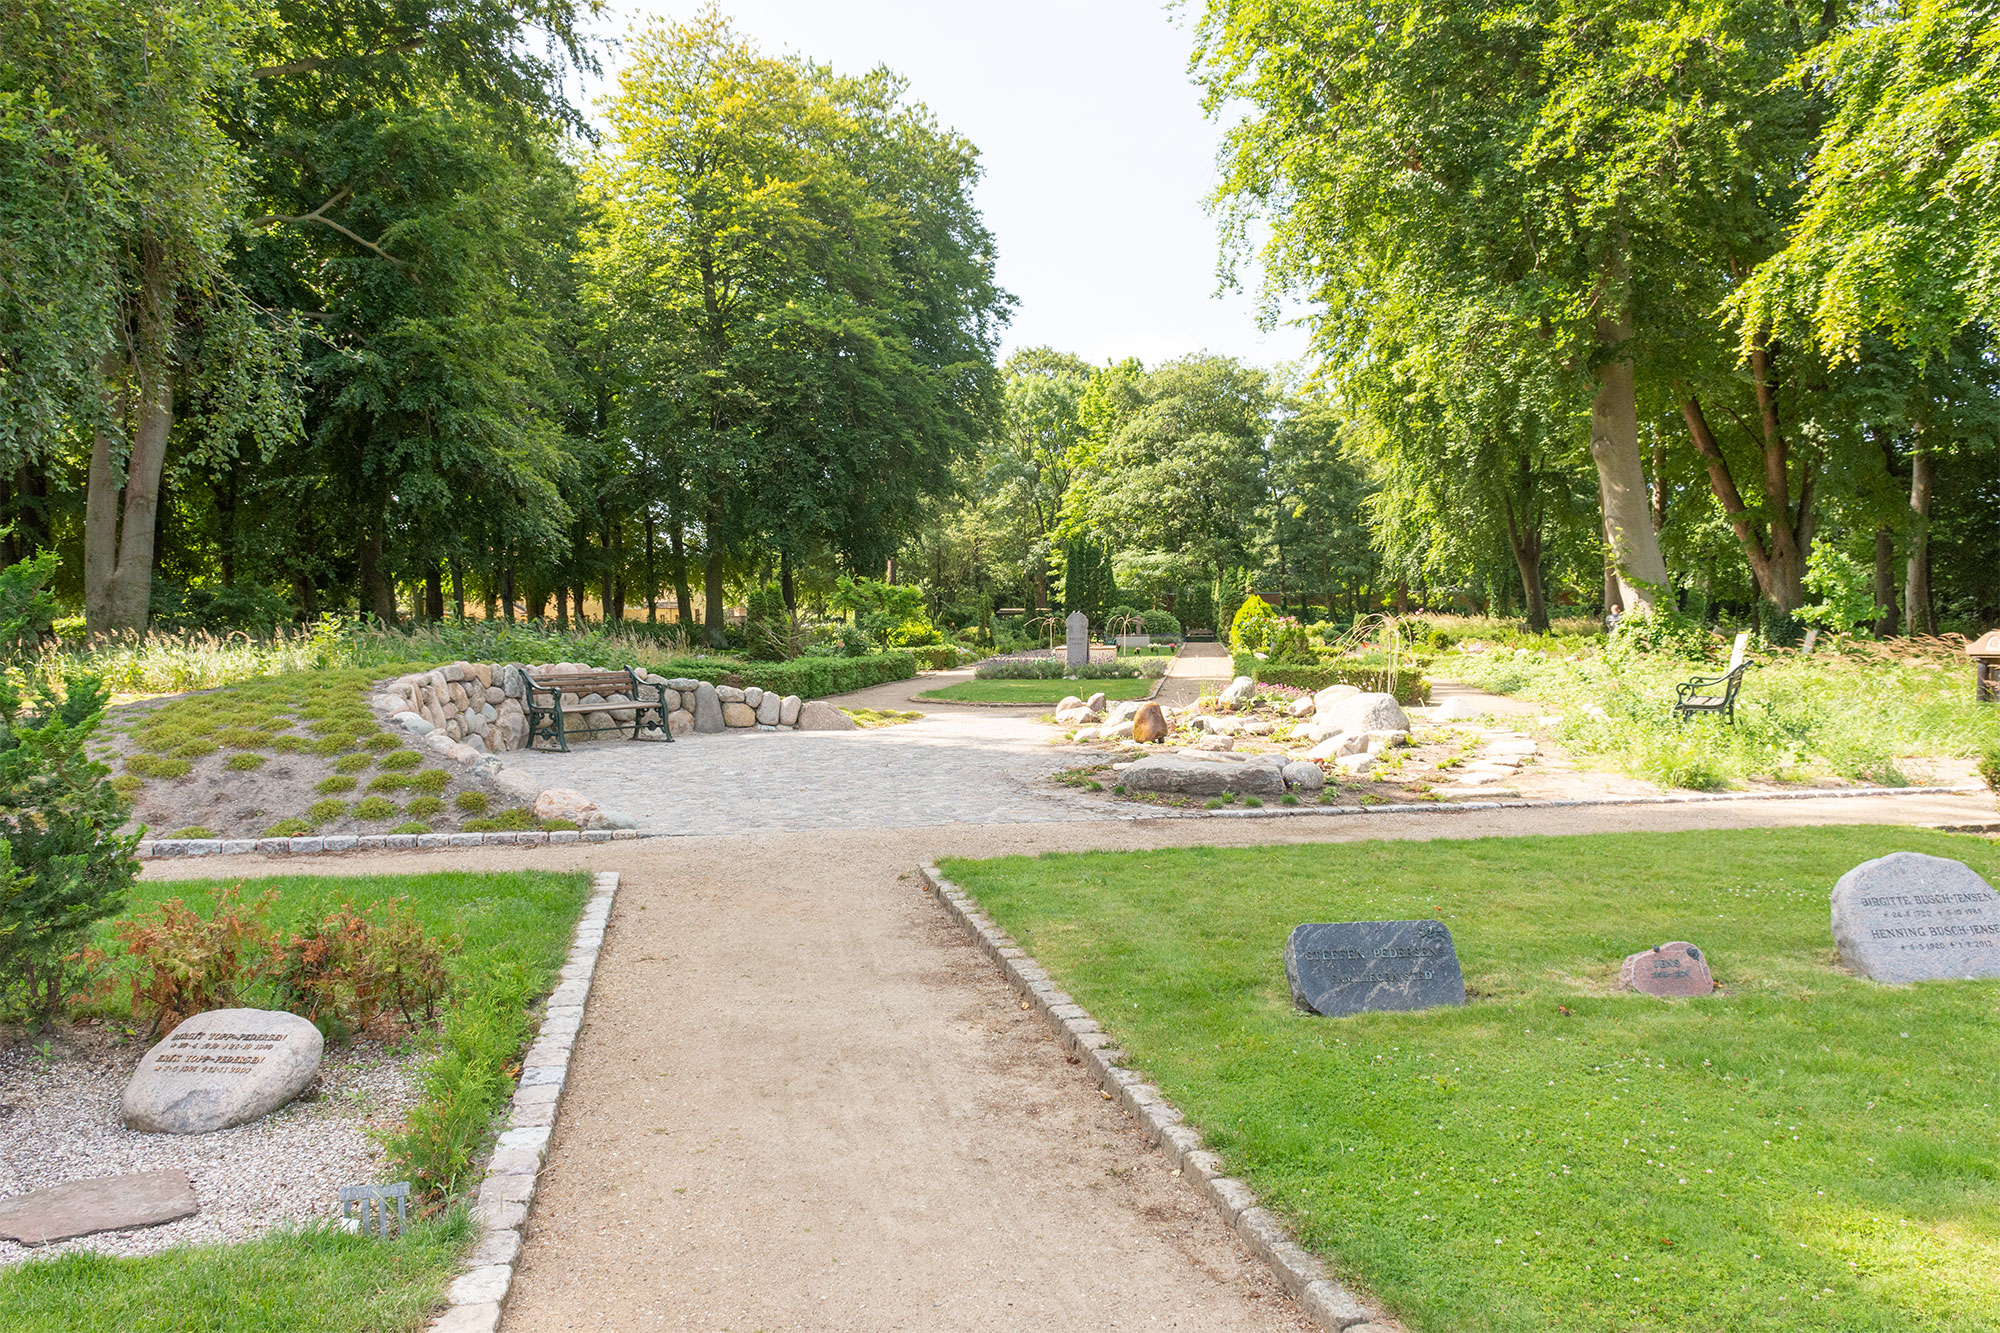 På Drag­ør Kirkegård har man opsat bænke med henblik på at skabe et nyt rum, hvor man kan sidde i stille eftertænksomhed og nyde beplantningerne, der skaber mere biodiversitet. Foto: Hans Jacob Sørensen.